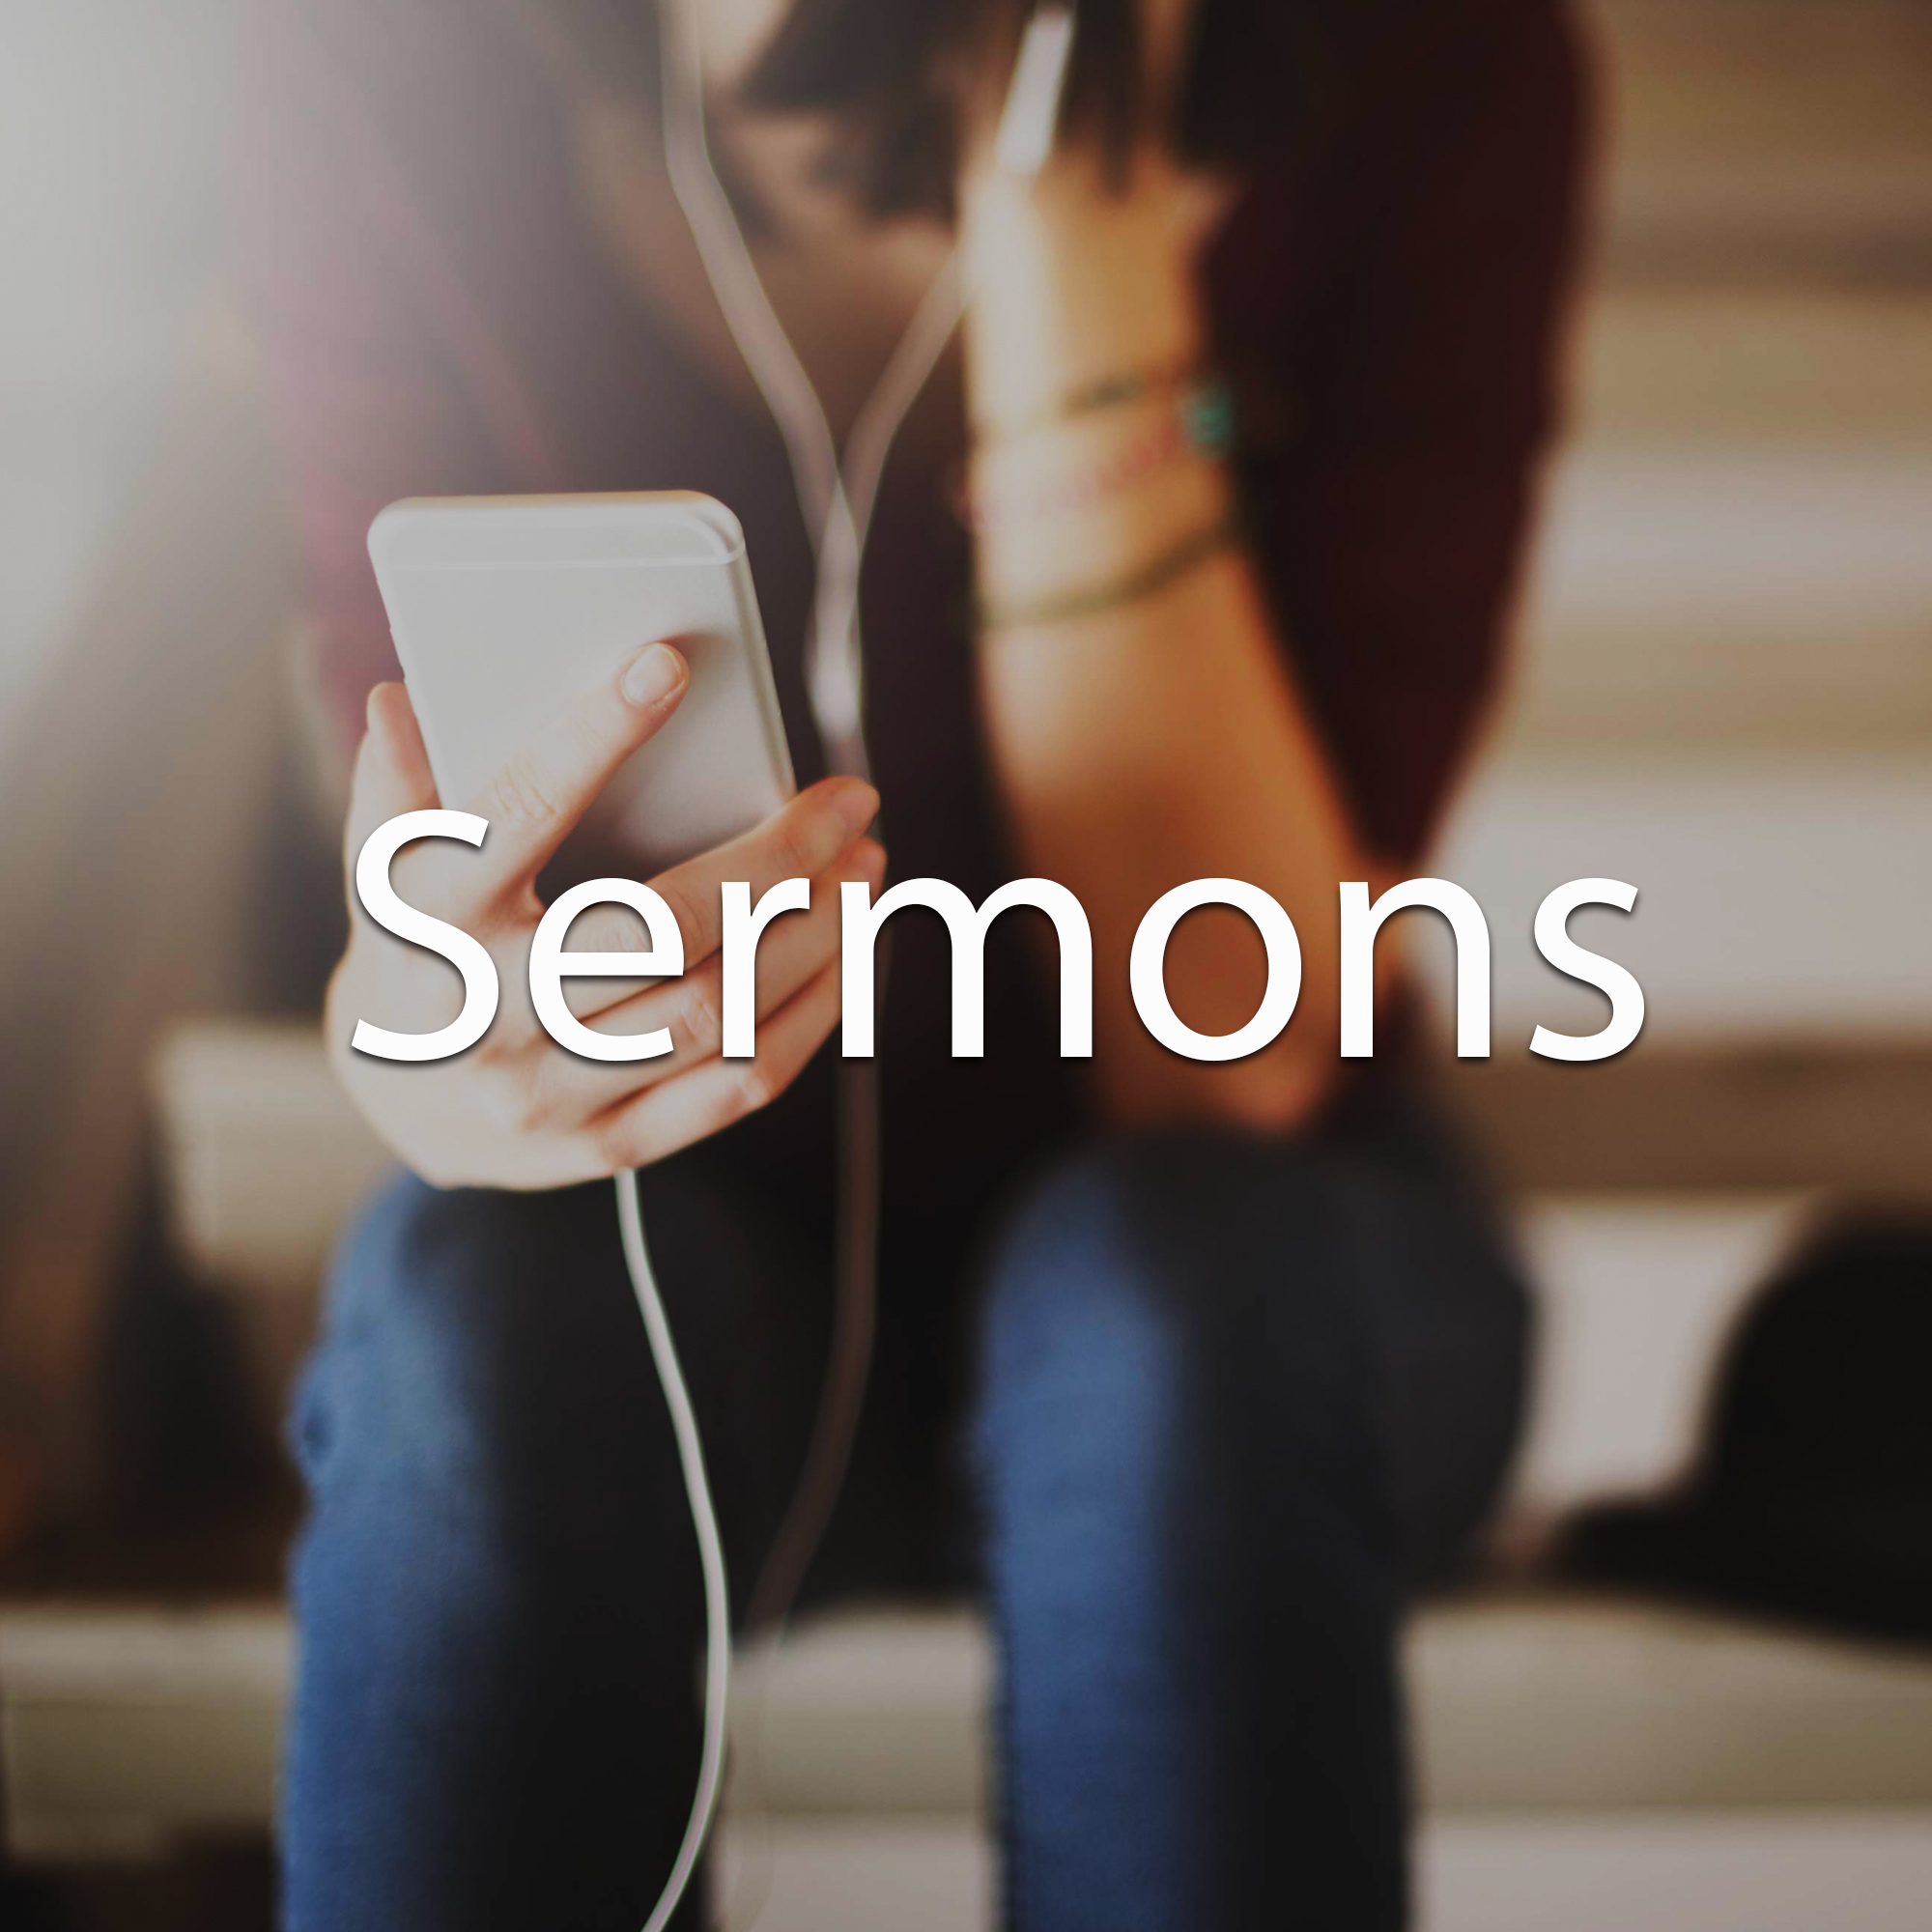 Listen to a Sermon